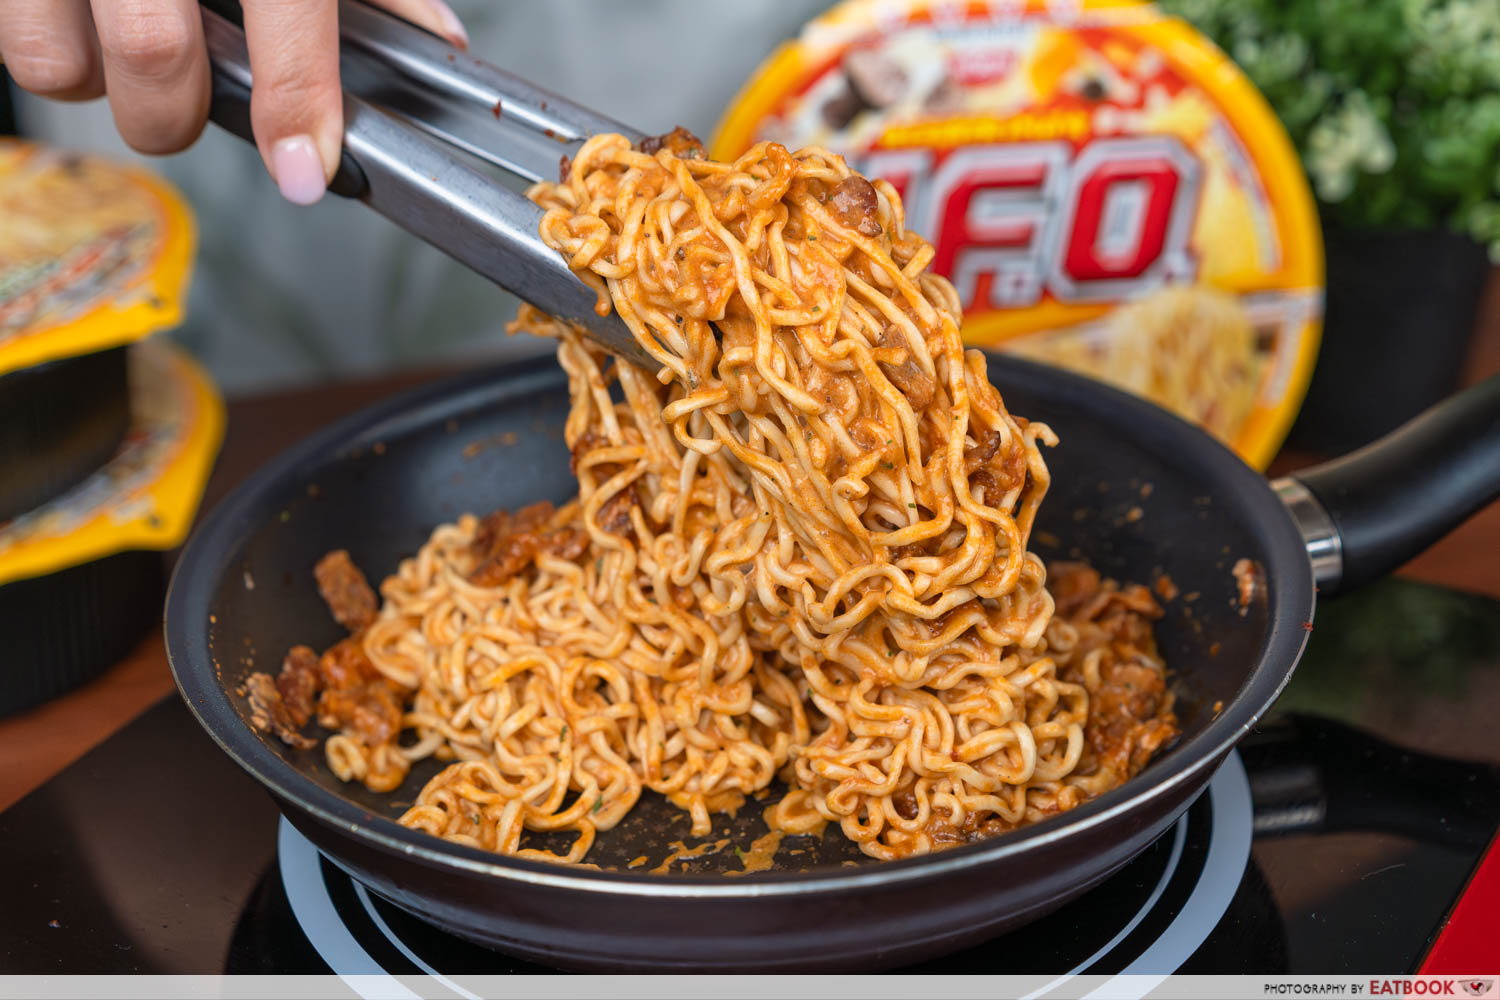 nissin ufo hacks - tossing noodles